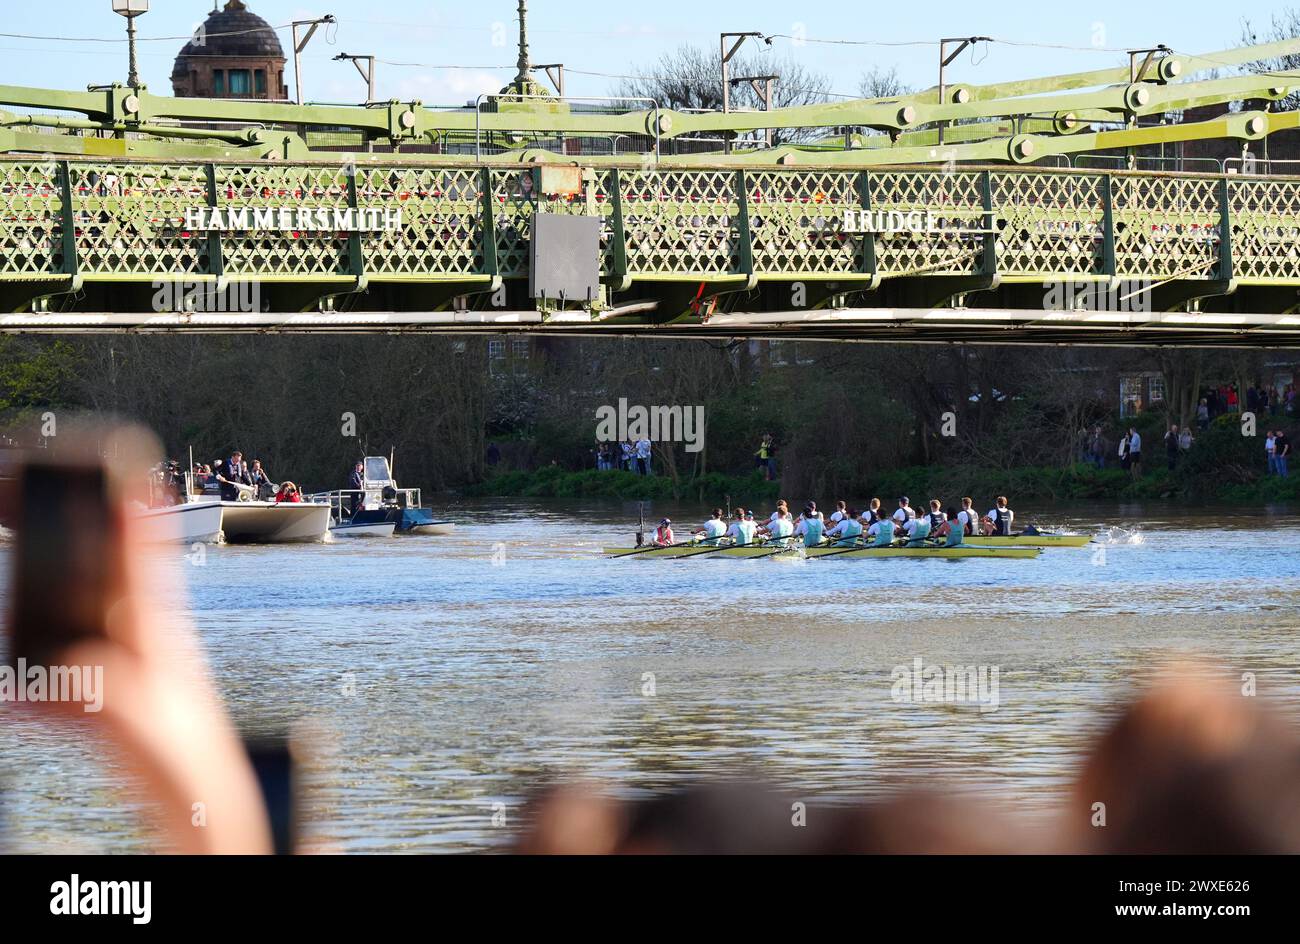 Les équipes de Cambridge et d'Oxford passent sous le pont Hammersmith lors de la 169e course masculine Gemini Boat Race 2024 sur la Tamise, à Londres. Date de la photo : samedi 30 mars 2024. Banque D'Images